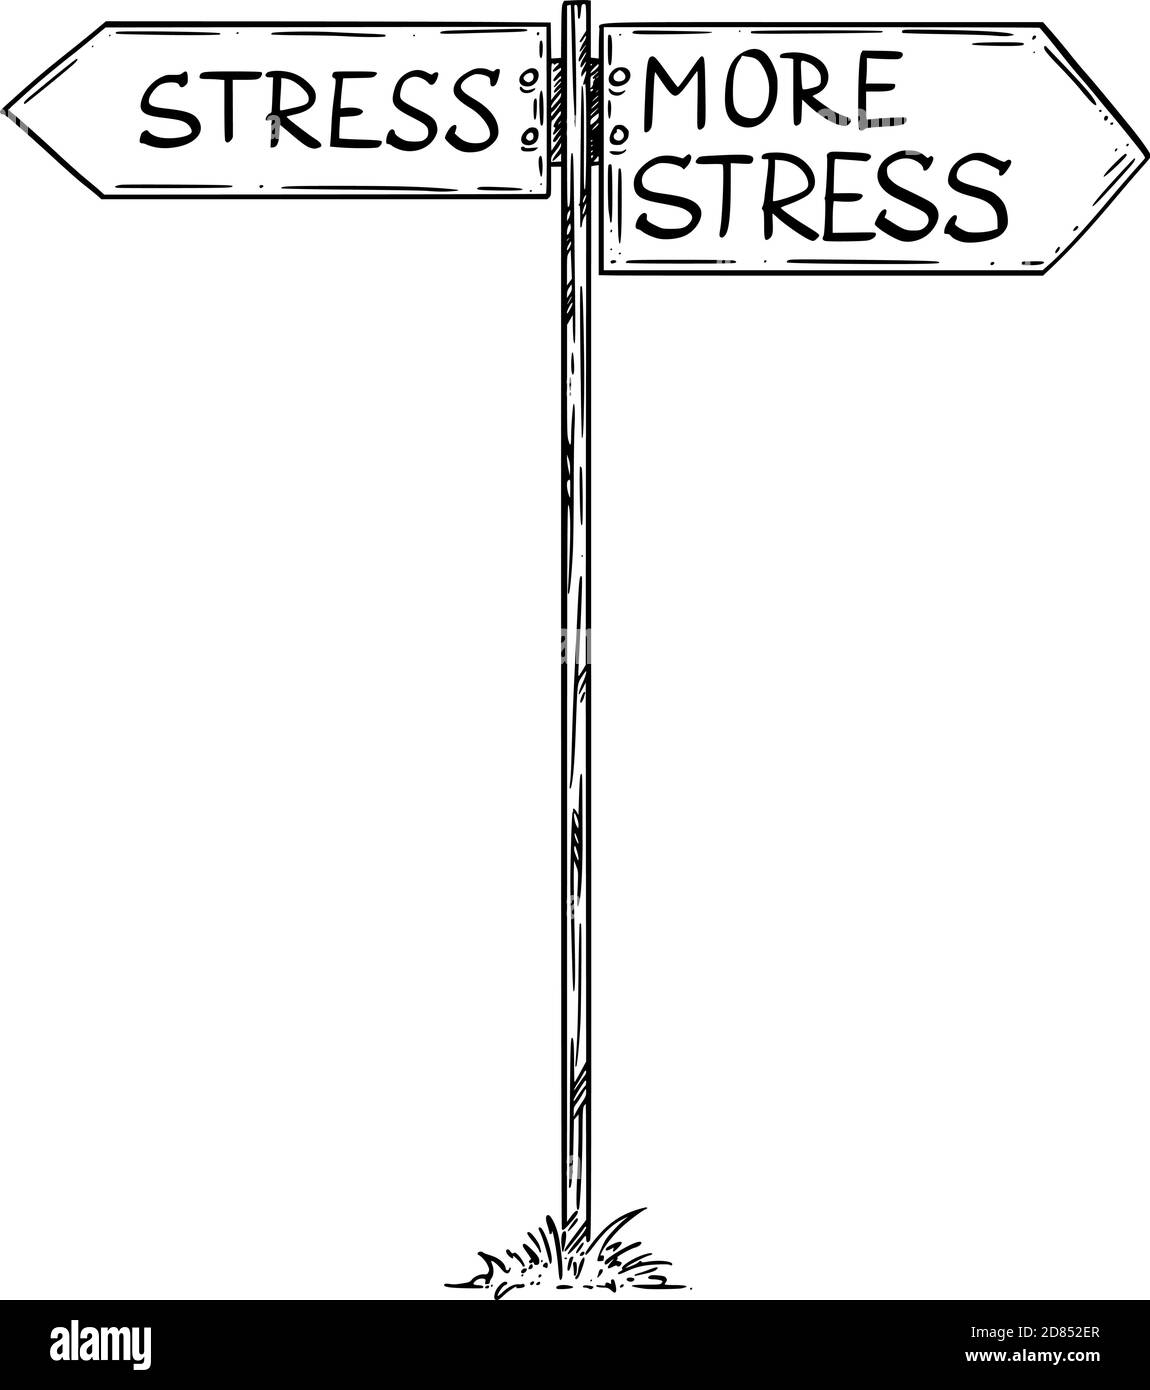 Illustrazione vettoriale cartoon di sollecitazione o più sollecitazione tra cui scegliere. Cartello stradale con frecce direzionali a sinistra e a destra. Illustrazione Vettoriale